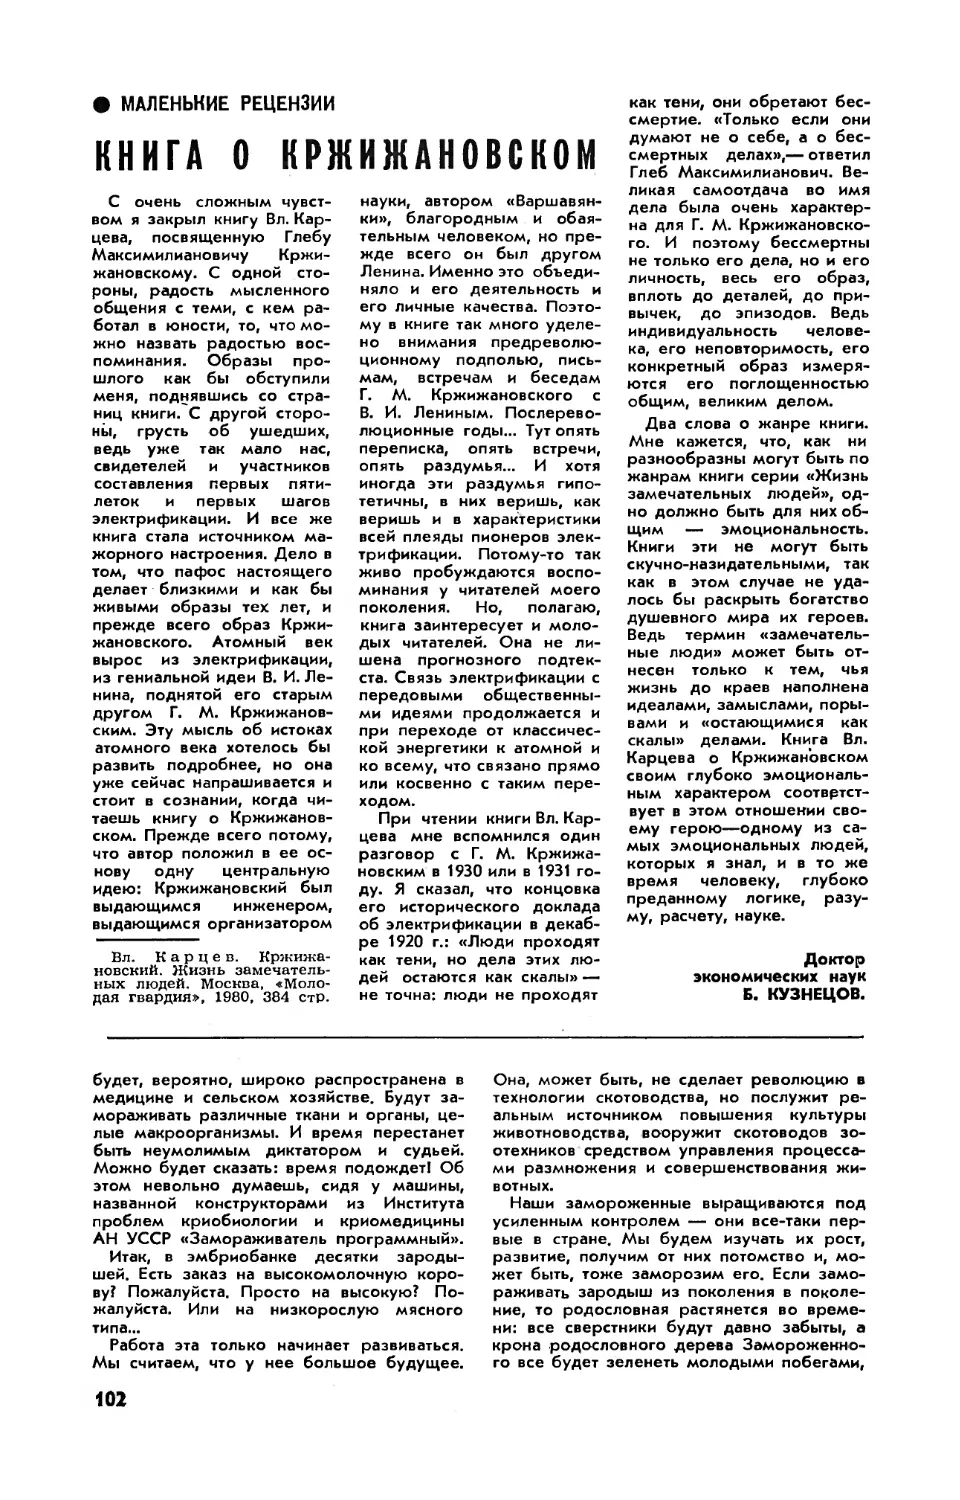 Б. КУЗНЕЦОВ, докт. экон. наук — Книга о Кржижановском